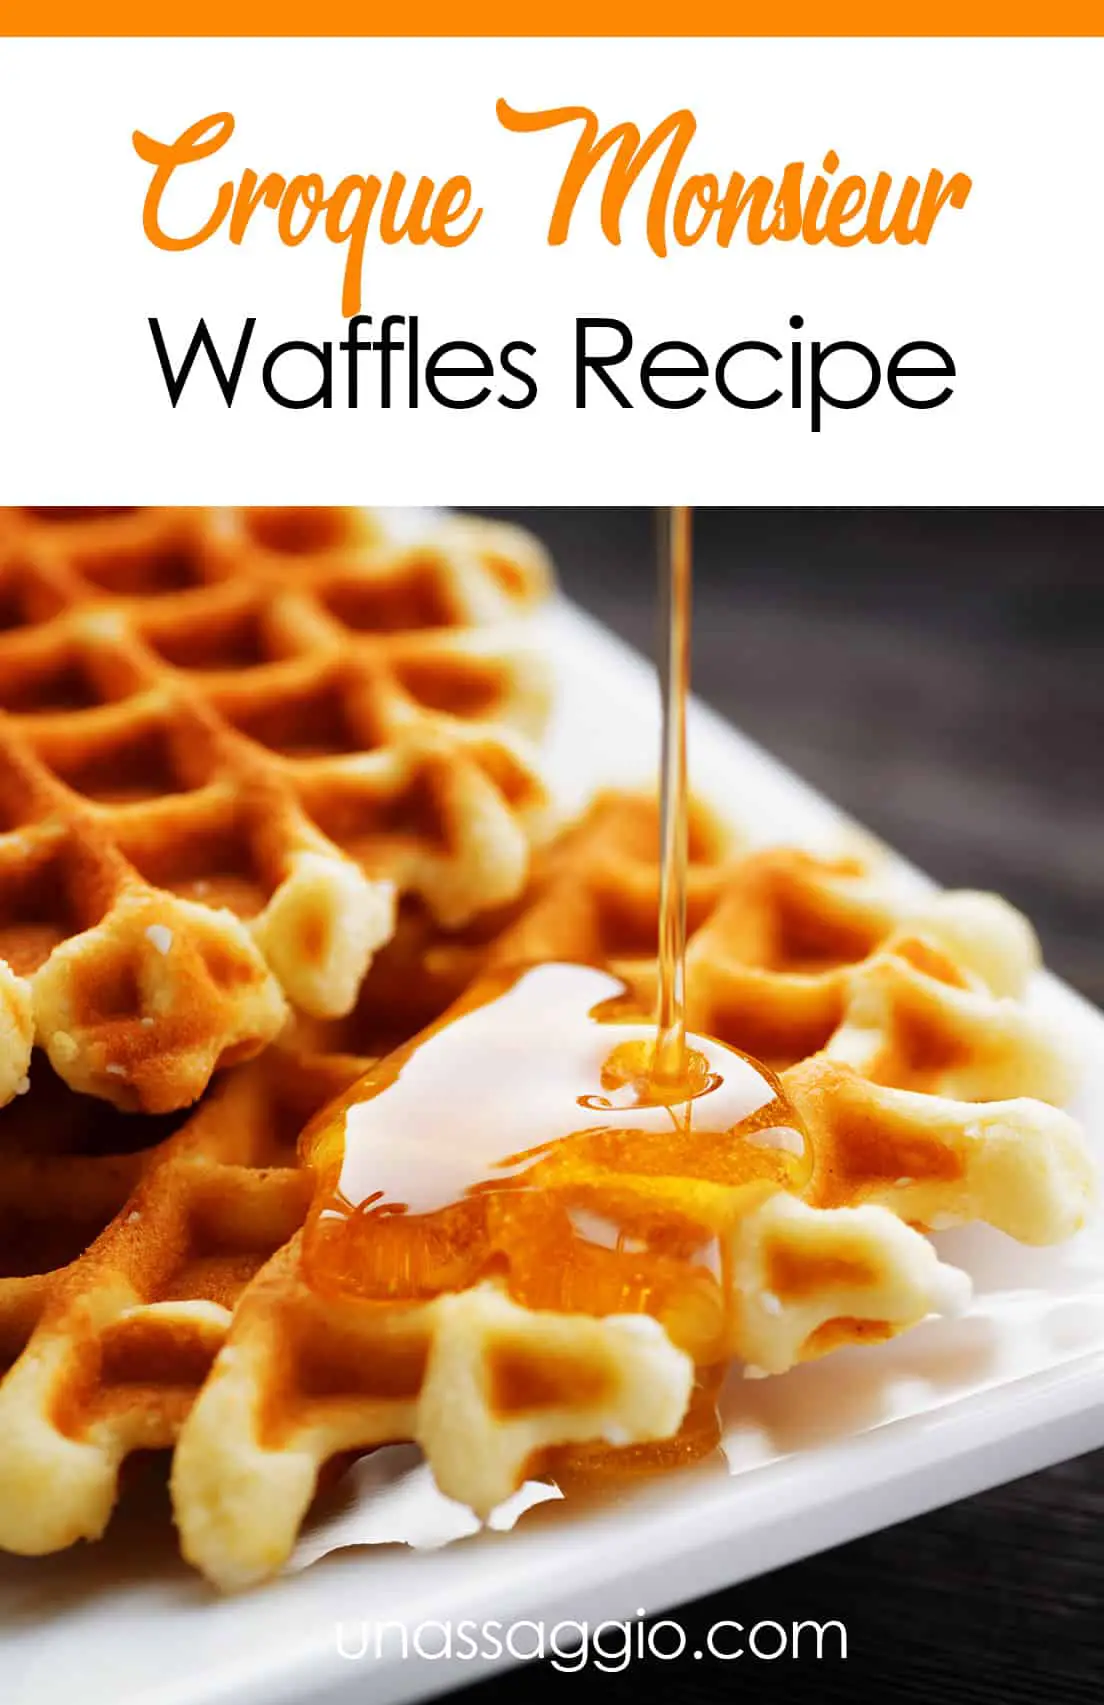 Croque Monsieur Waffles